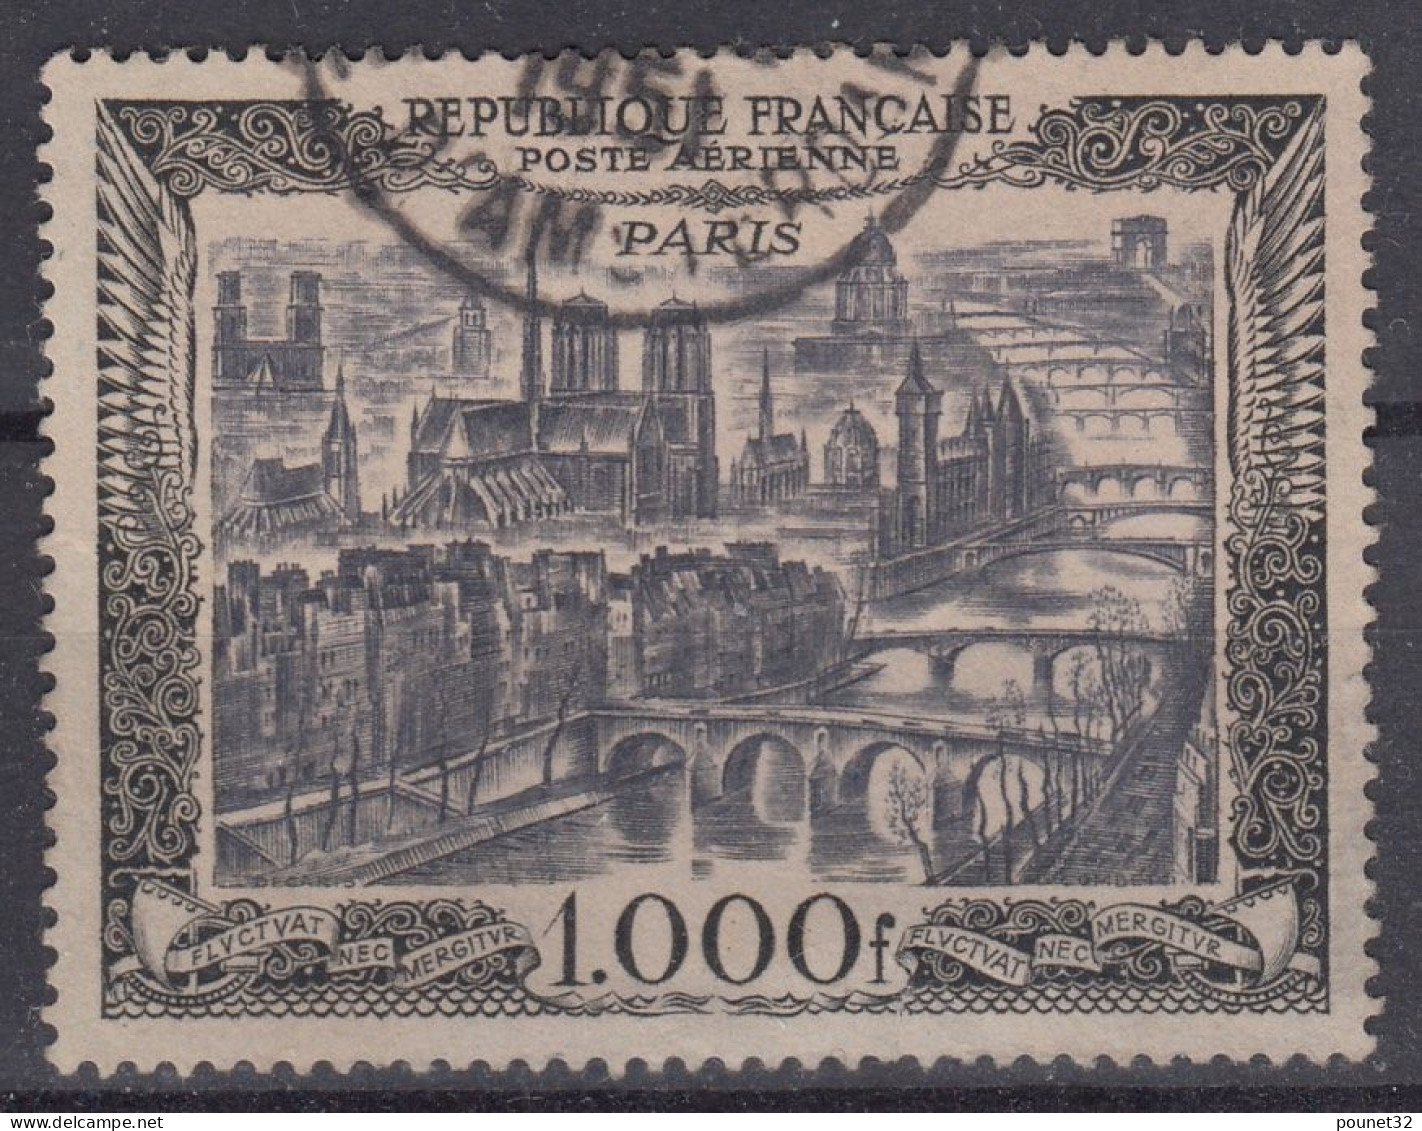 TIMBRE FRANCE 1950 - POSTE AERIENNE N° 29 PARIS 1000 F OBLITERATION CHOISIE - 1927-1959 Oblitérés